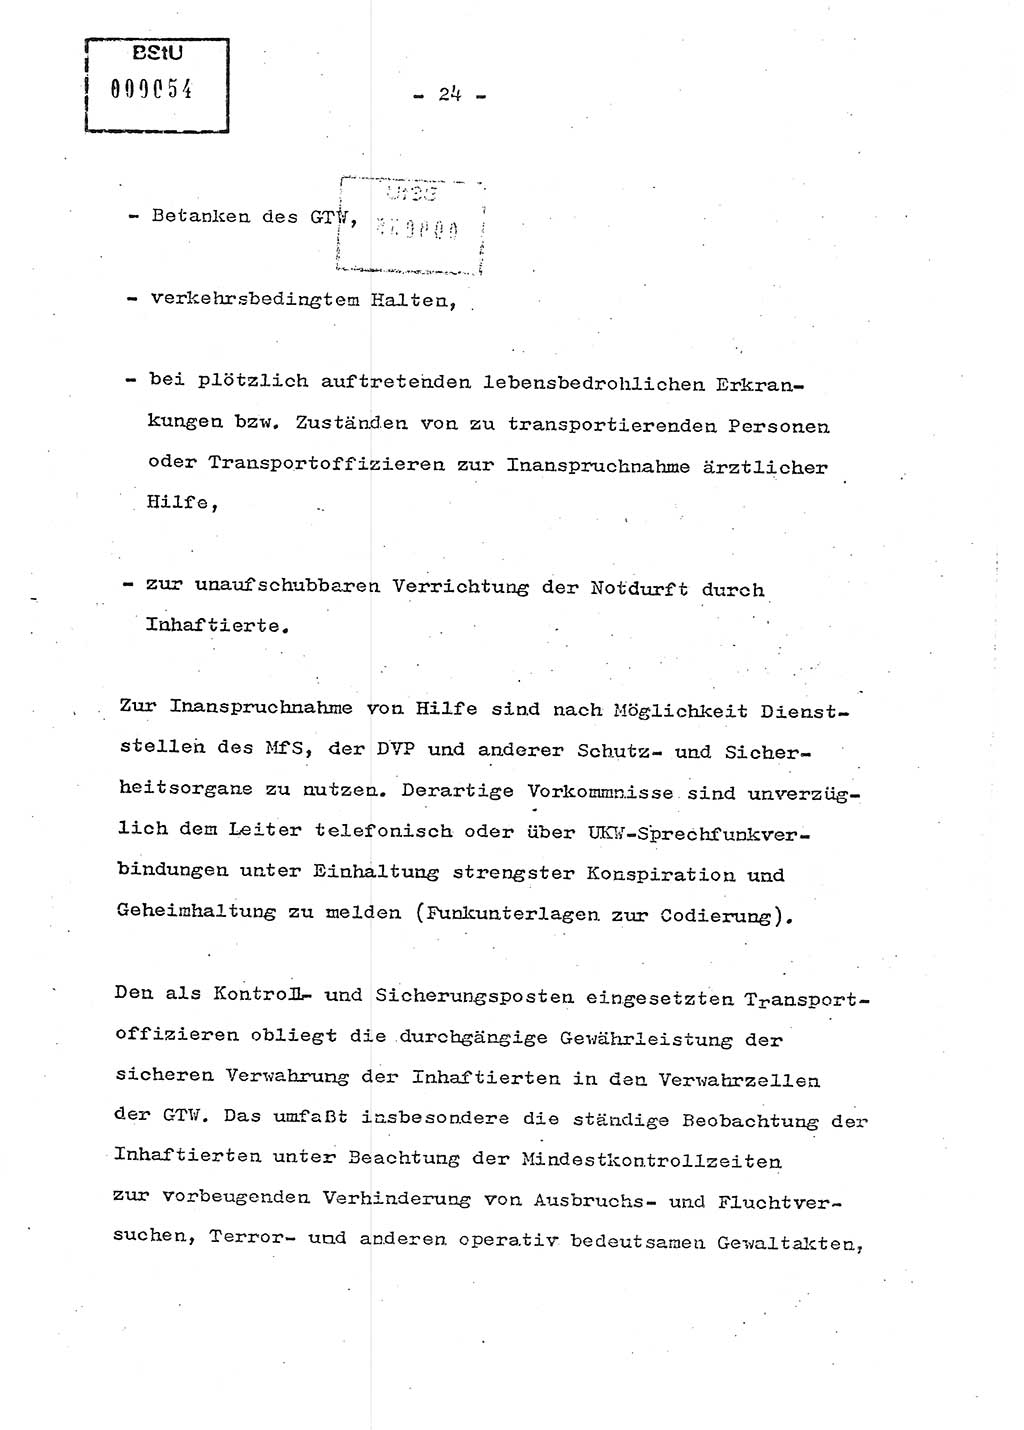 Schulungsmaterial Exemplar-Nr.: 7, Ministerium für Staatssicherheit [Deutsche Demokratische Republik (DDR)], Abteilung (Abt.) ⅩⅣ, Berlin 1986, Seite 24 (Sch.-Mat. Expl. 7 MfS DDR Abt. ⅩⅣ /86 1986, S. 24)